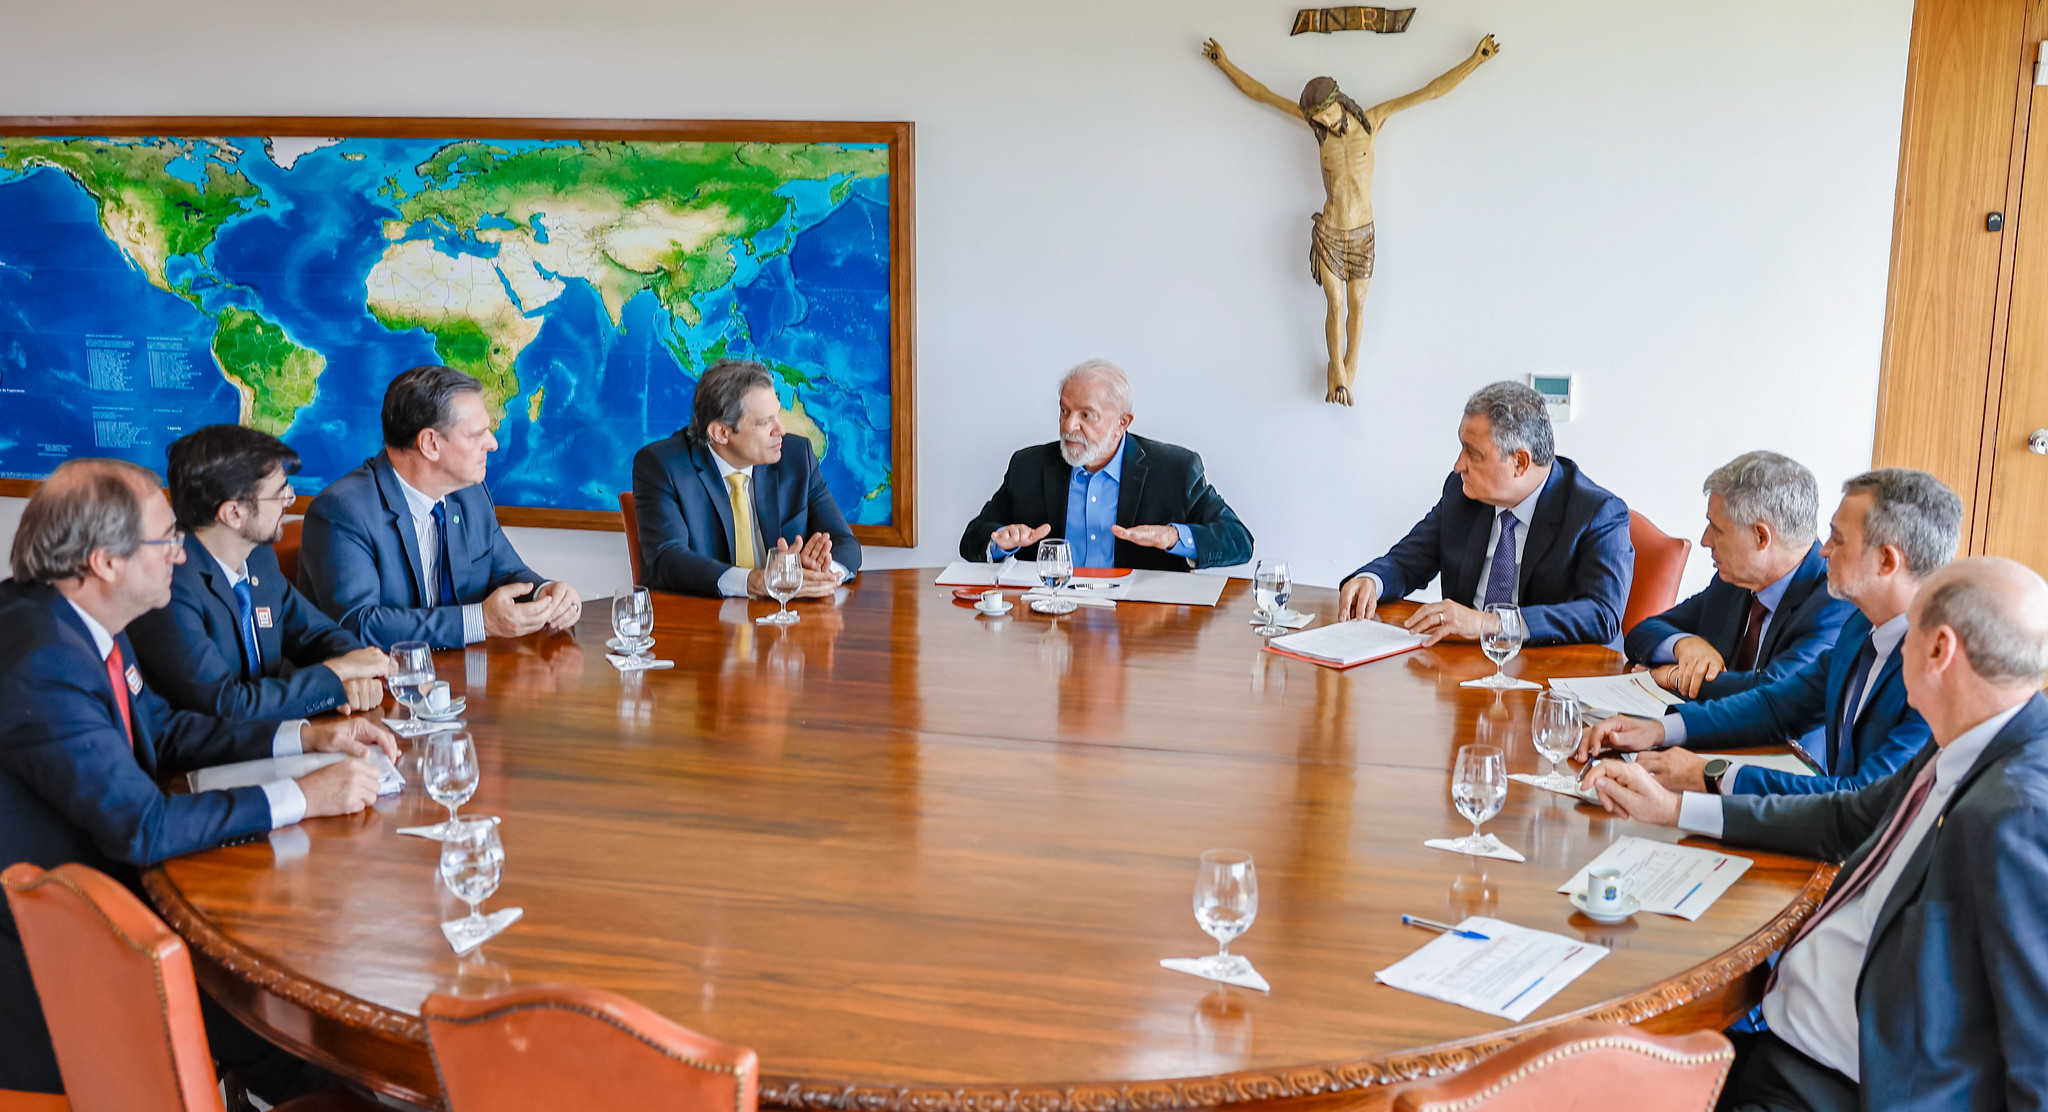 Presidente faz reunião com ministros no Palácio do Planalto sobre alta de preços de produtos alimentícios; expectativa é de redução a partir de abril